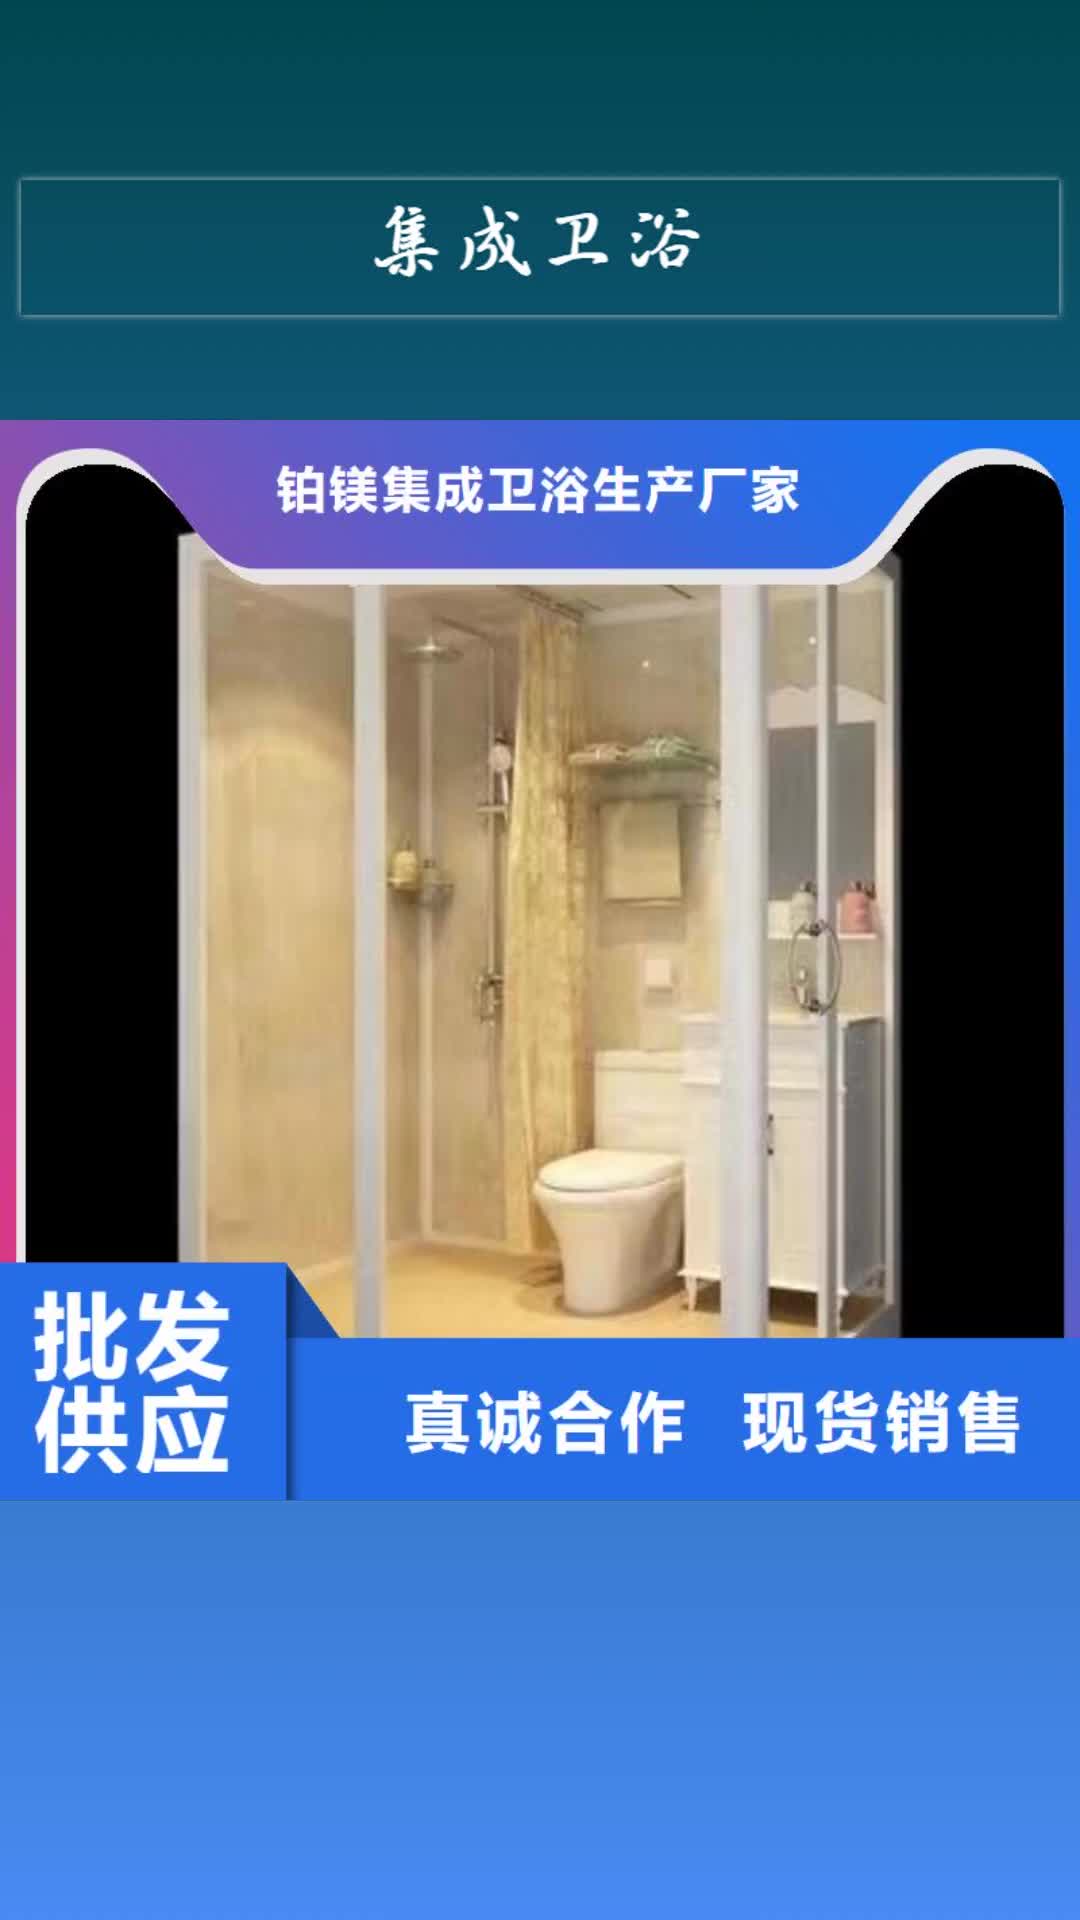 晋城【集成卫浴】金属雕花板厕所专业生产团队